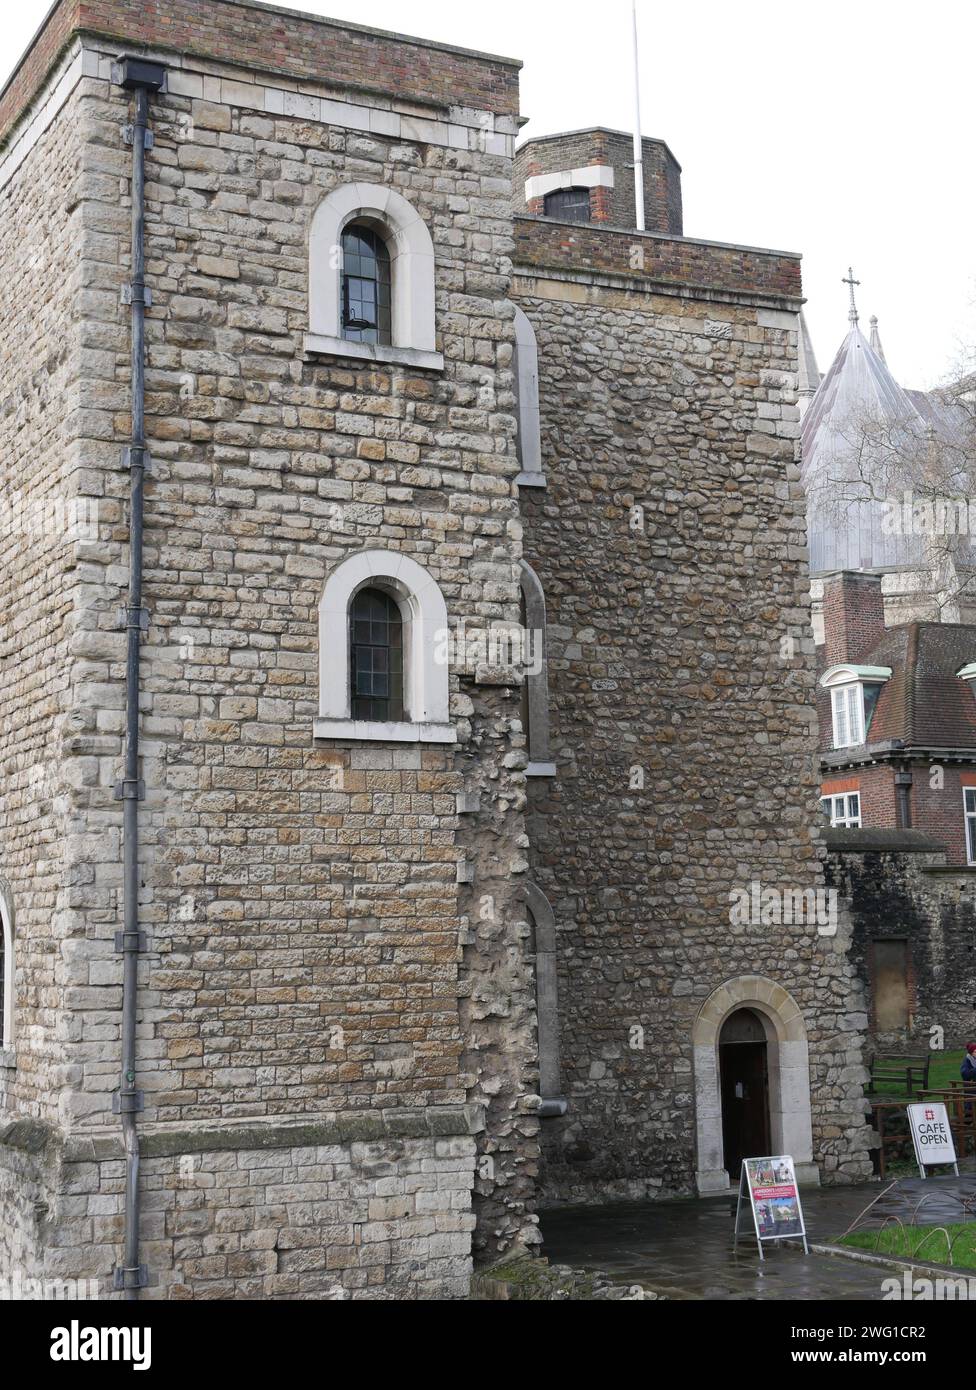 Juwel Tower, der Turm wurde von König Eduard III. Zwischen 1365 und 1366 erbaut und diente als Lagerraum für die Gold- und Silbersammlung des Königs. Stockfoto